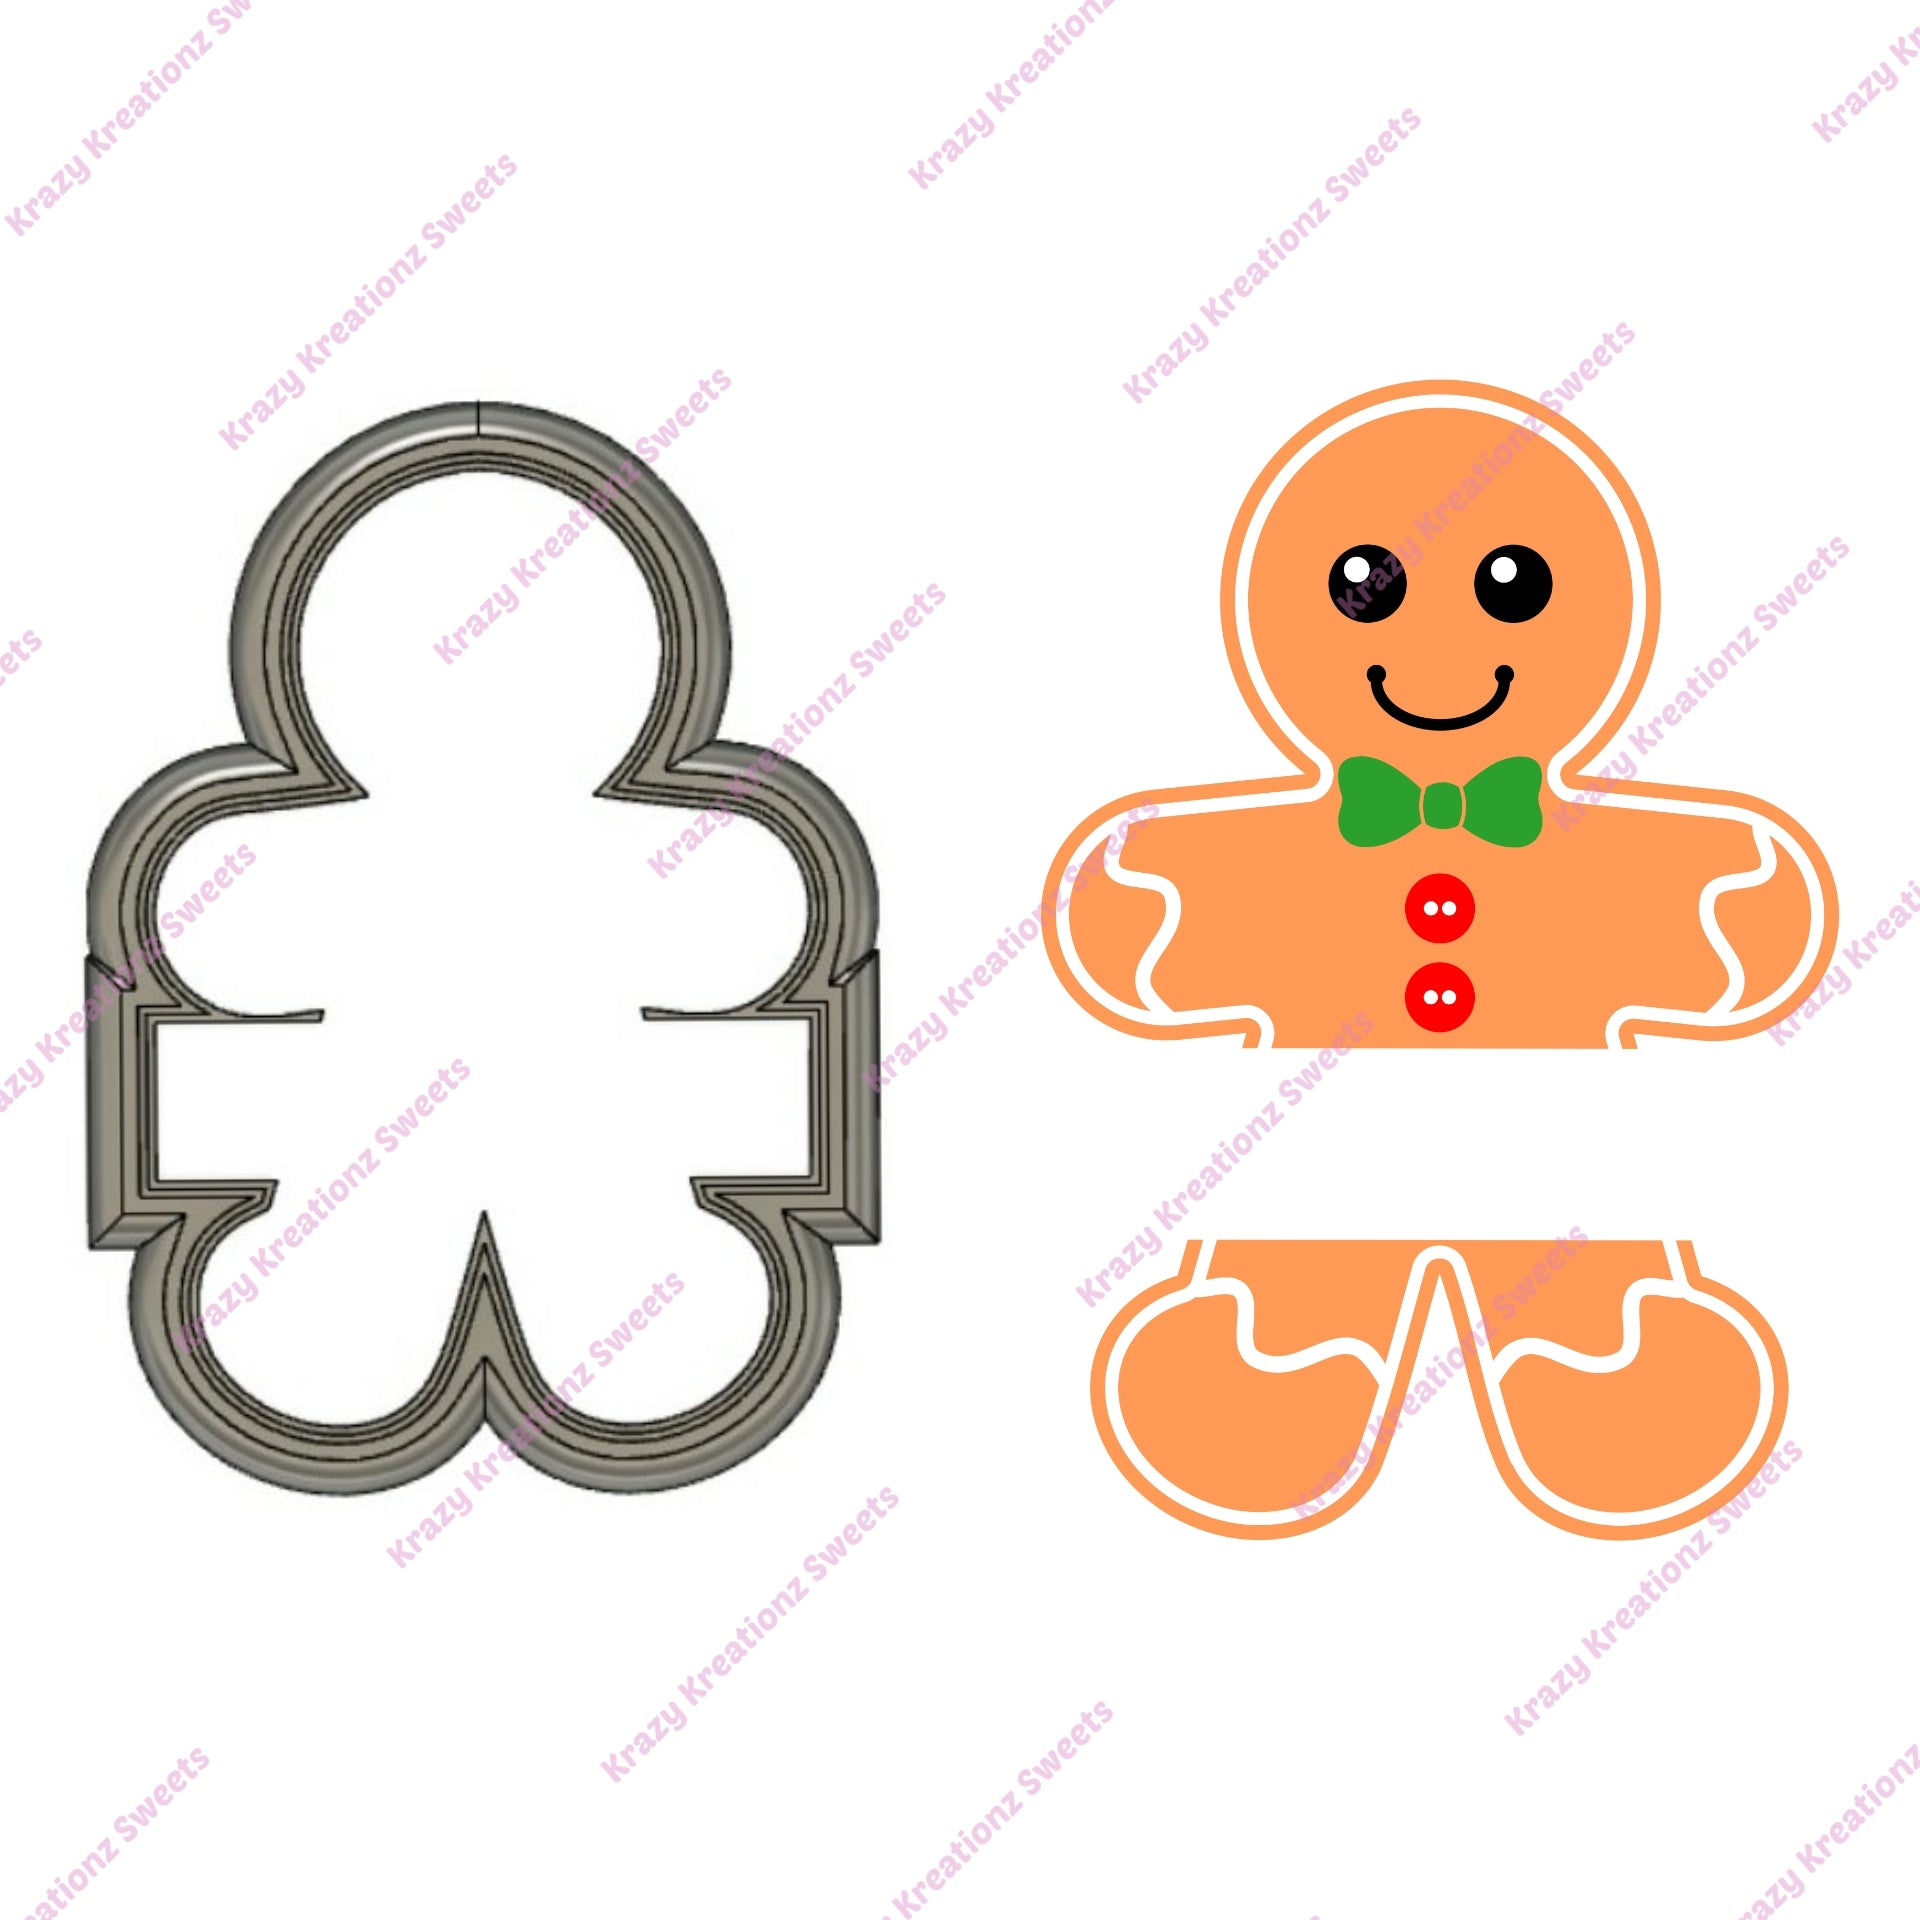 XL Gingerbread Boy Plaque Cookie Cutter